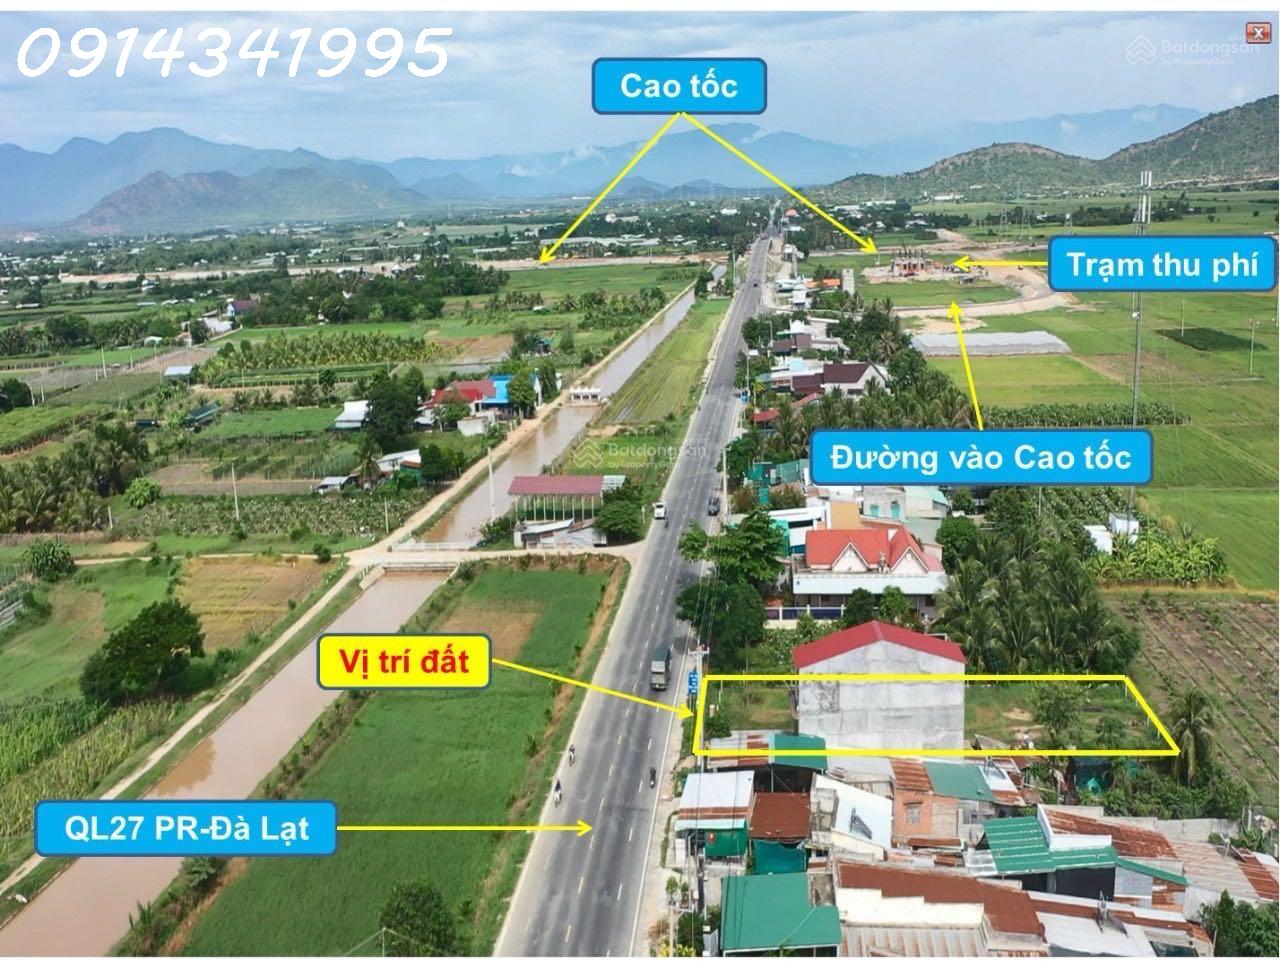 Nút giao cao tốc Cam Lâm Vĩnh Hảo. Mặt QL27A, 20x50m sân bay Thành Sơn 5km, QL1 6km - Ảnh 3